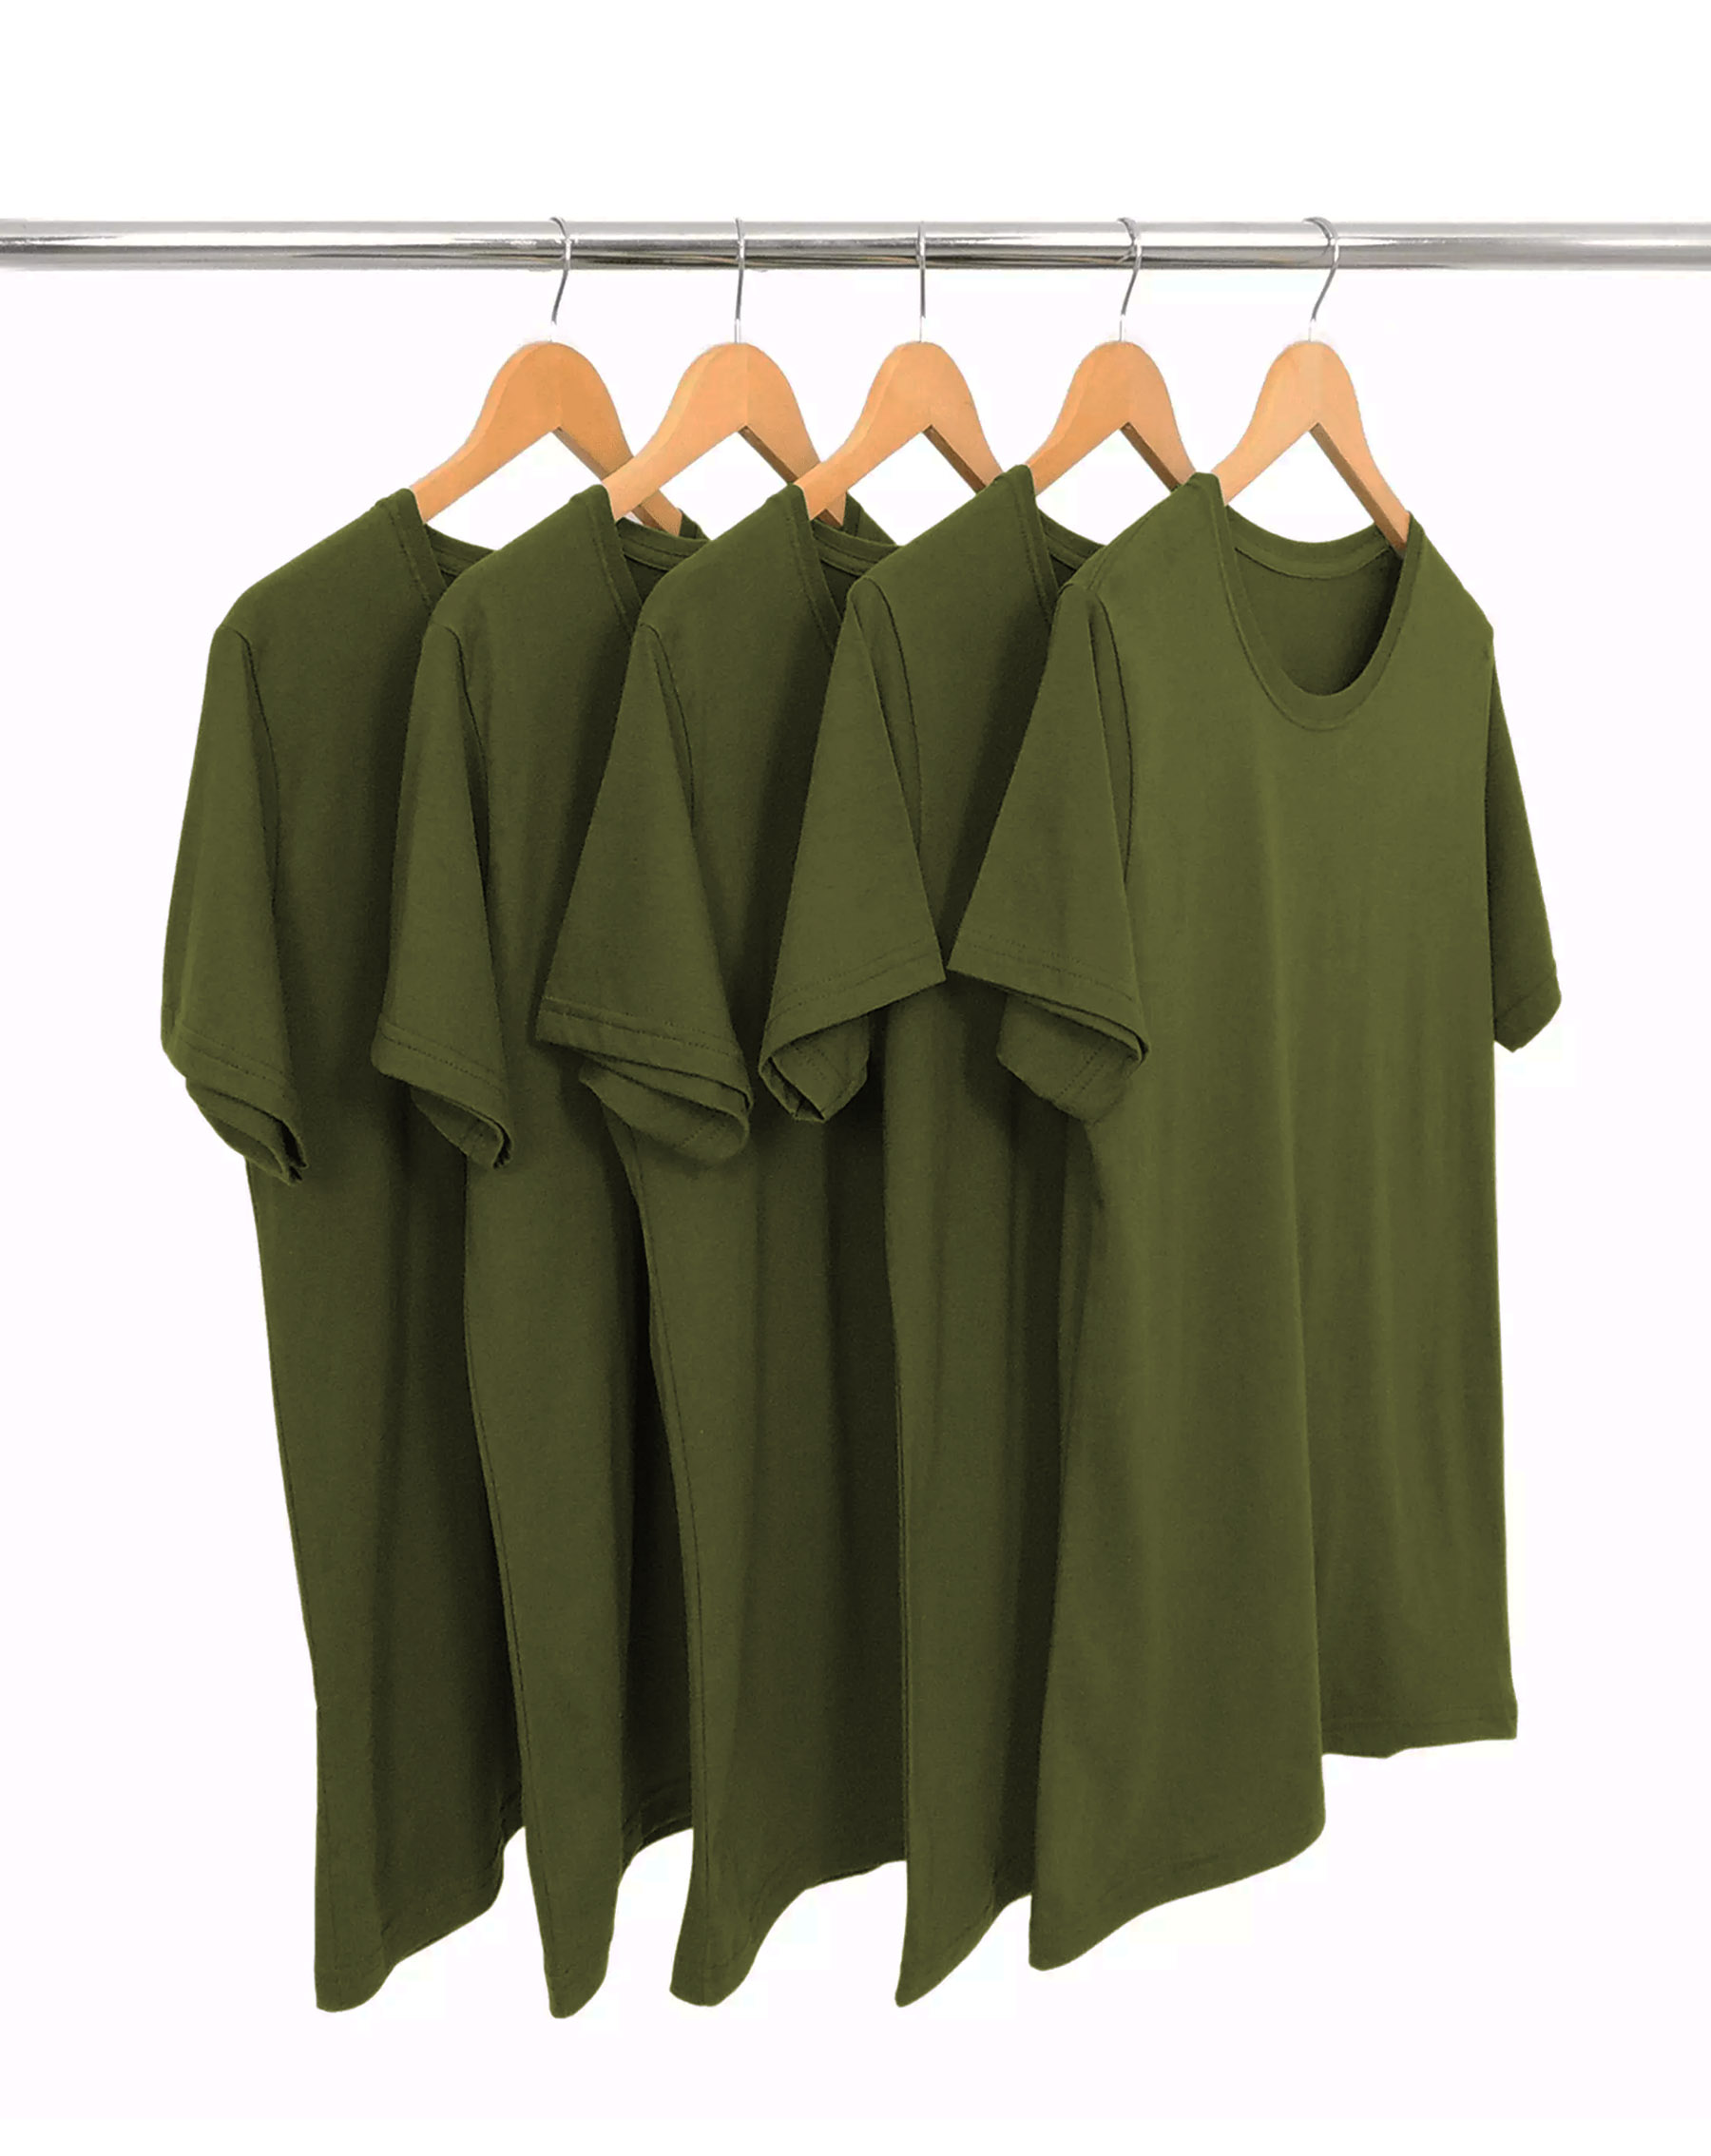 KIT 5 Camisetas de Algodão Premium Verde Militar